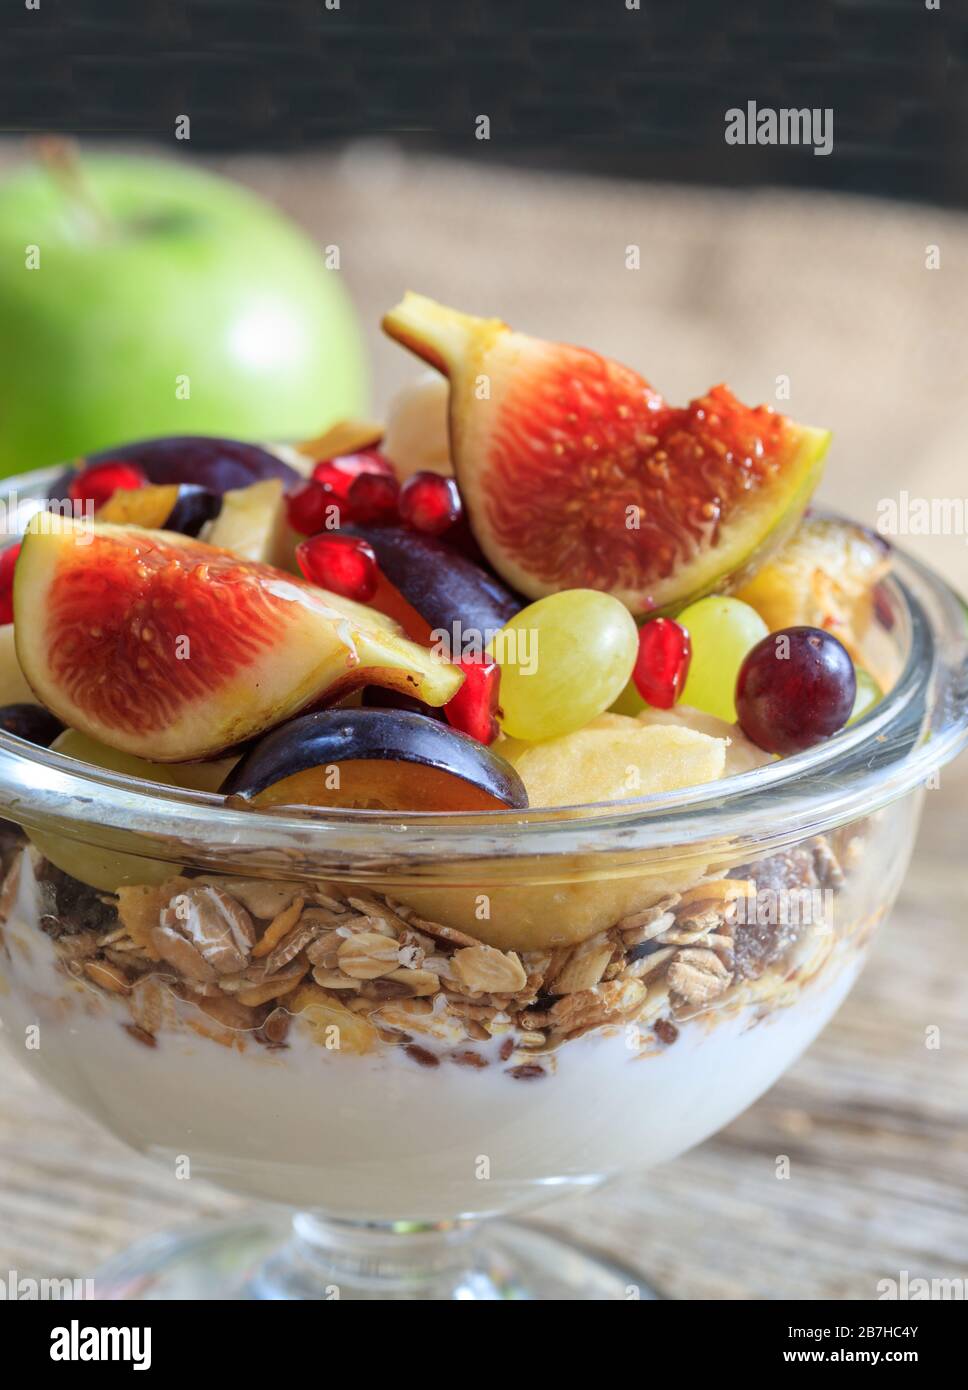 Gesundes Frühstückskonzept. Joghurt, Müsli und frisches Obst in einer Schüssel, verwischen den Hintergrund. Nahaufnahme von Lebensmitteln für einen gesunden Lebensstil. Stockfoto